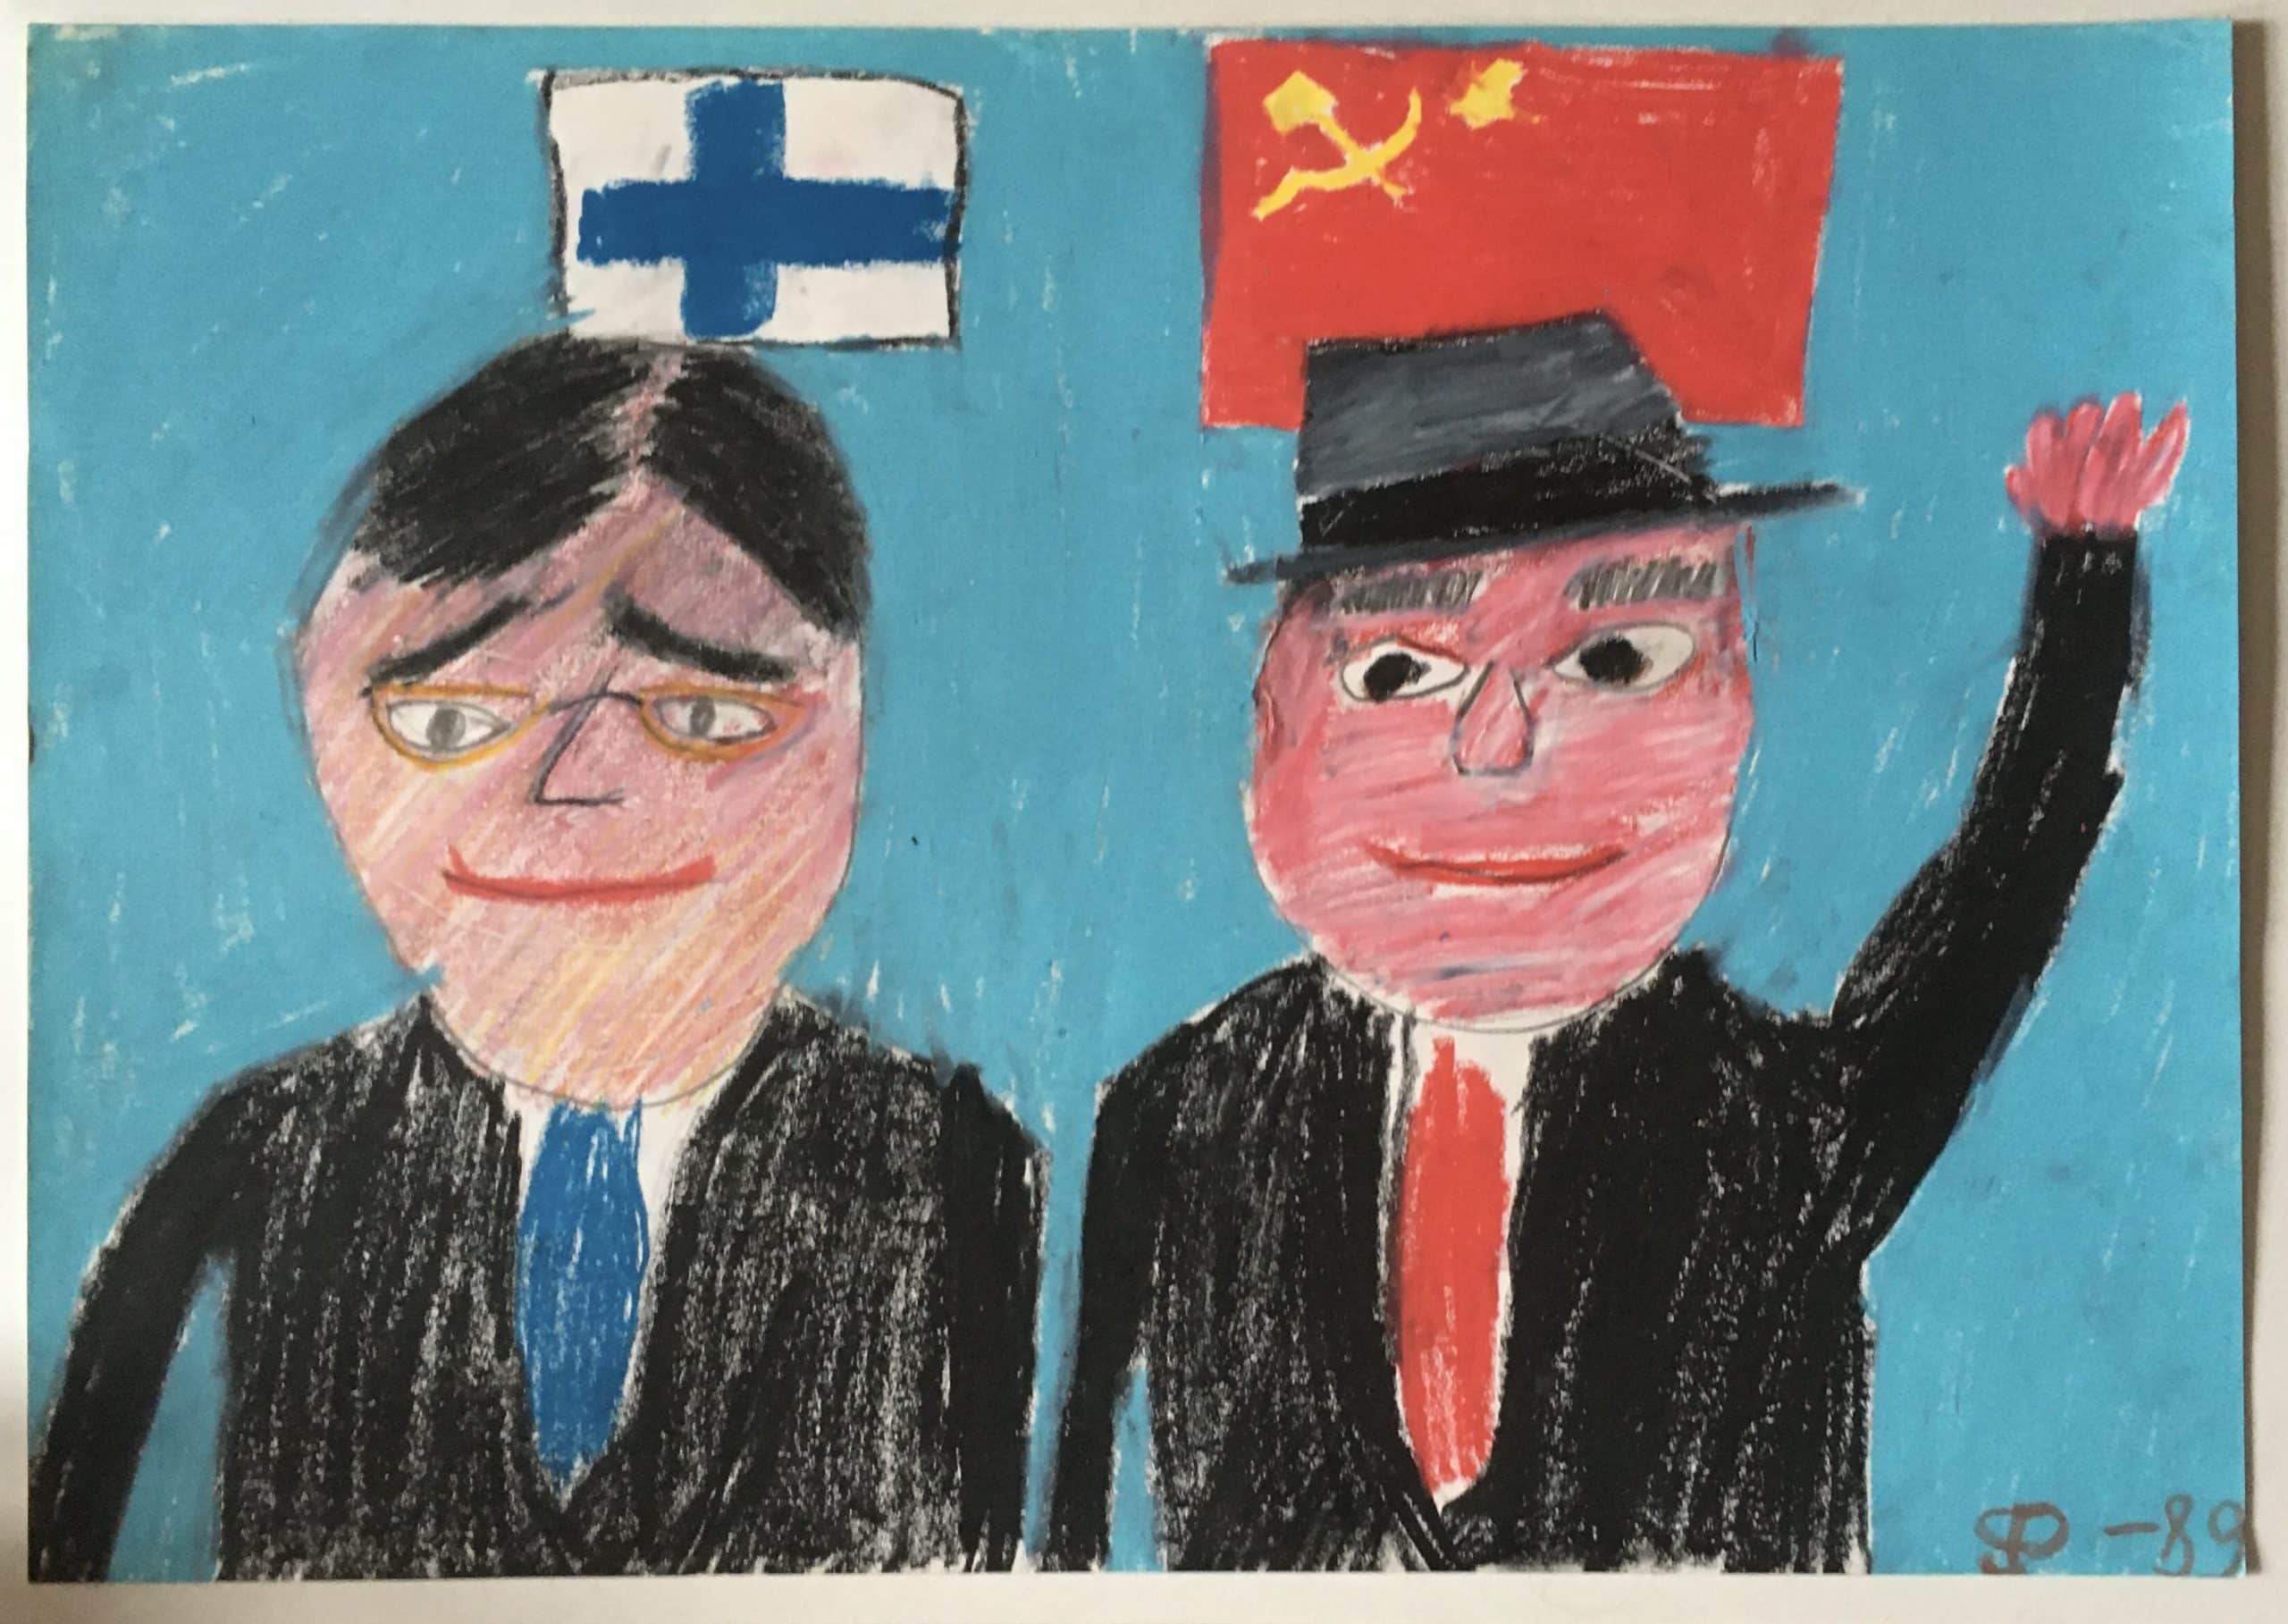 Viidesluokkalaisen Pekka Pitkälän (s. 1978) piirros Mihail Gorbatšovista ja Mauno Koivistosta vuoden 1989 vierailun yhteydessä.